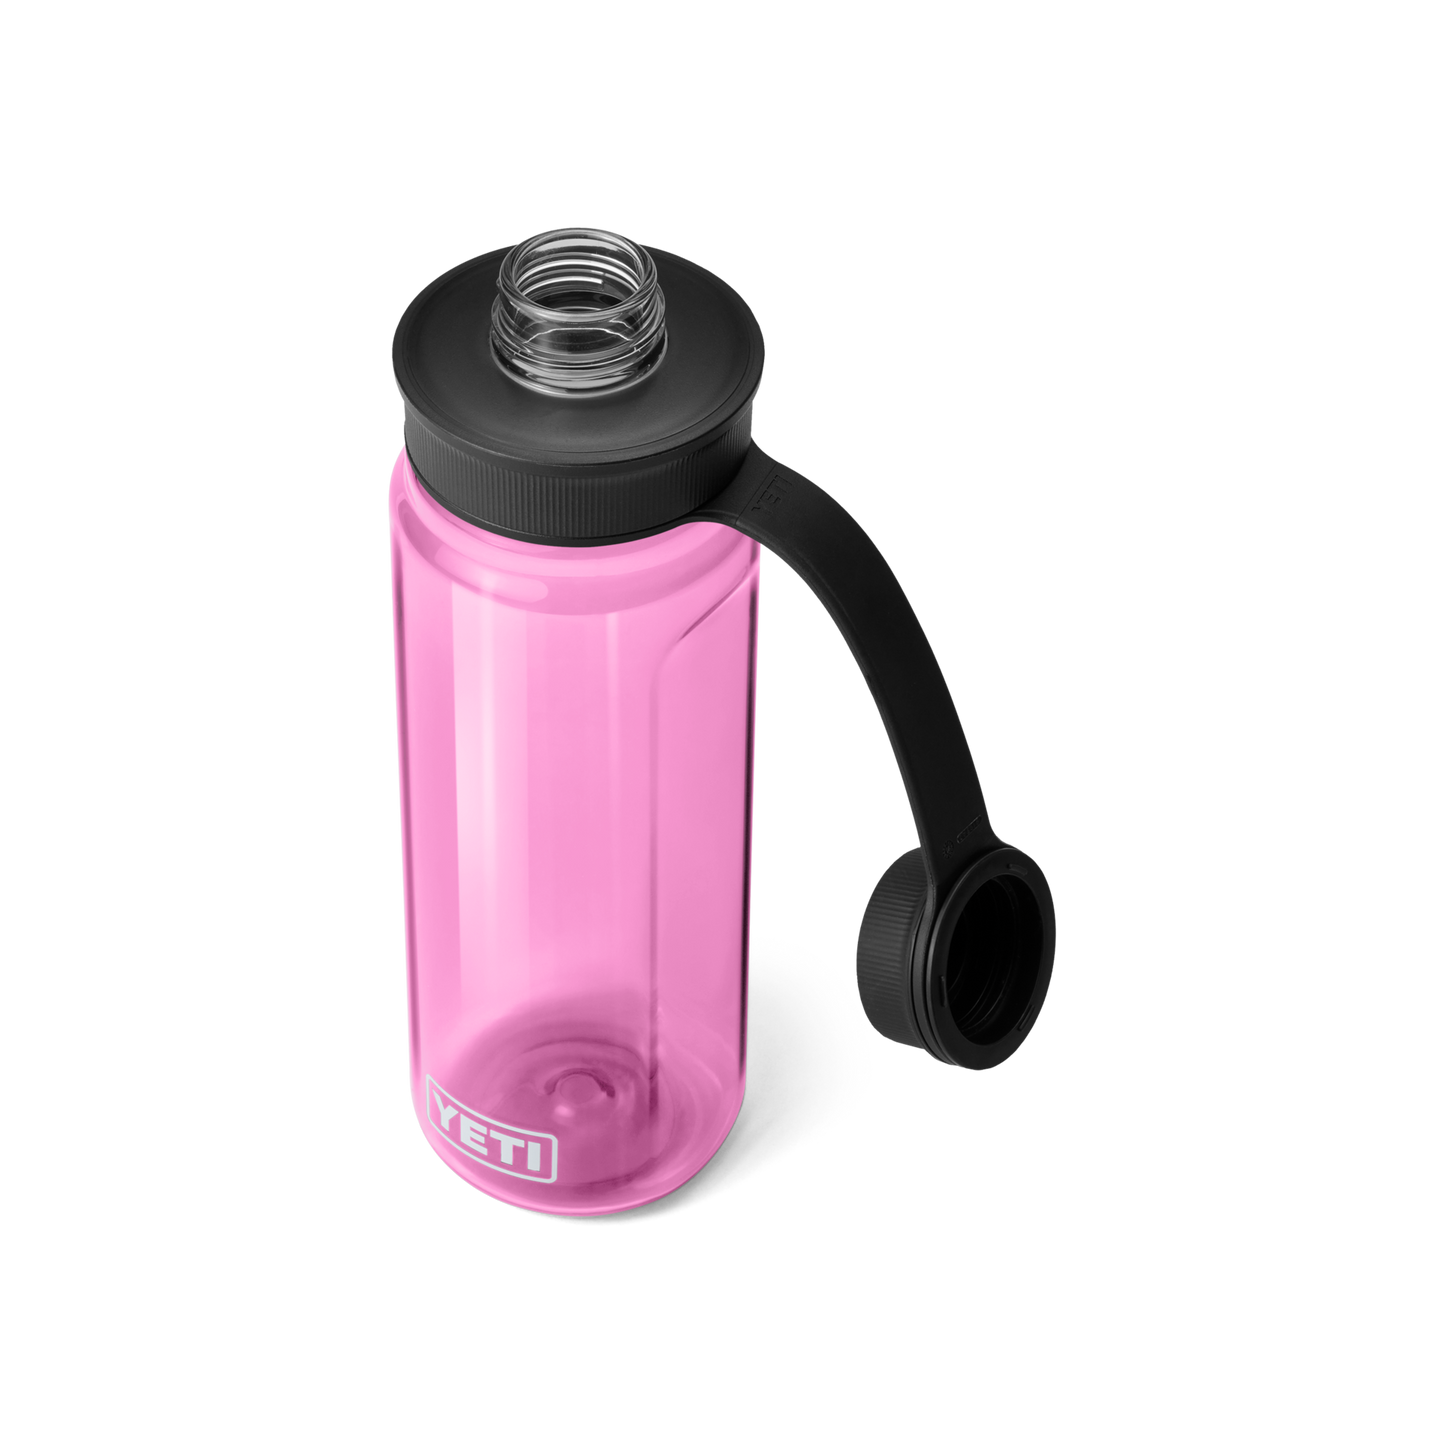 YETI Yonder™ 25 oz (750 ml) Water Bottle Power Pink